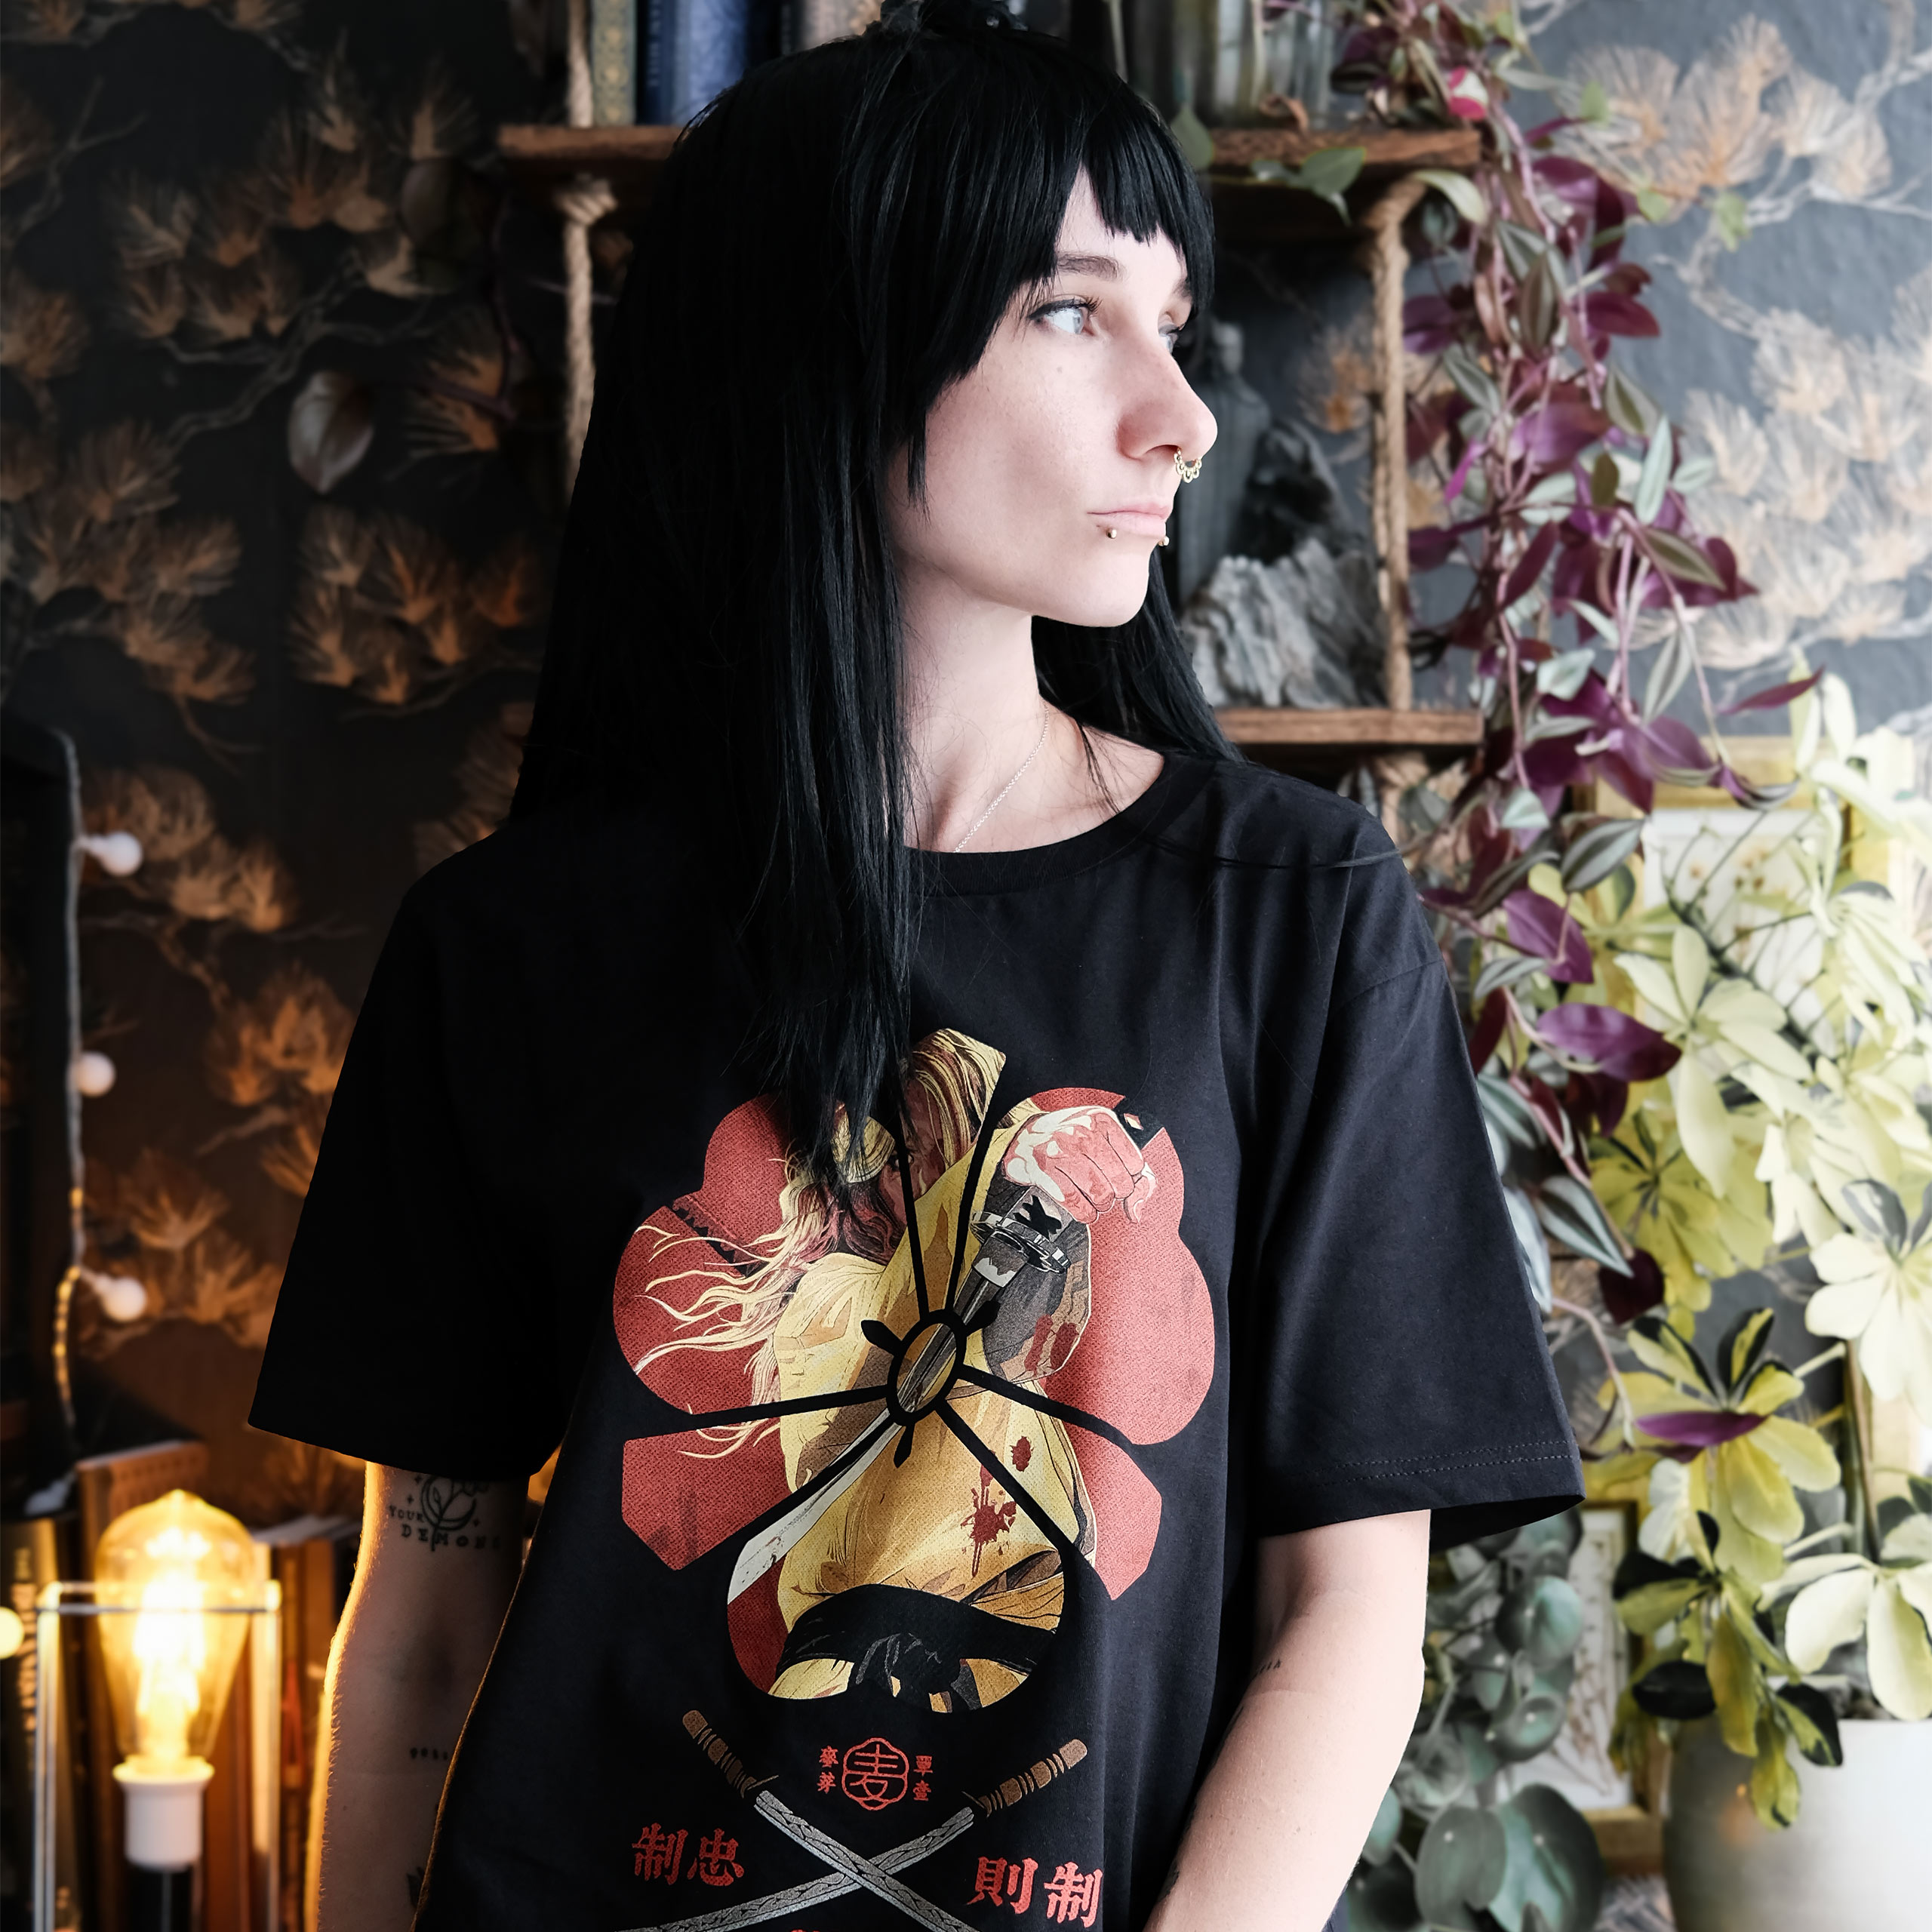 Female Assassin T-Shirt voor Kill Bill Fans Zwart